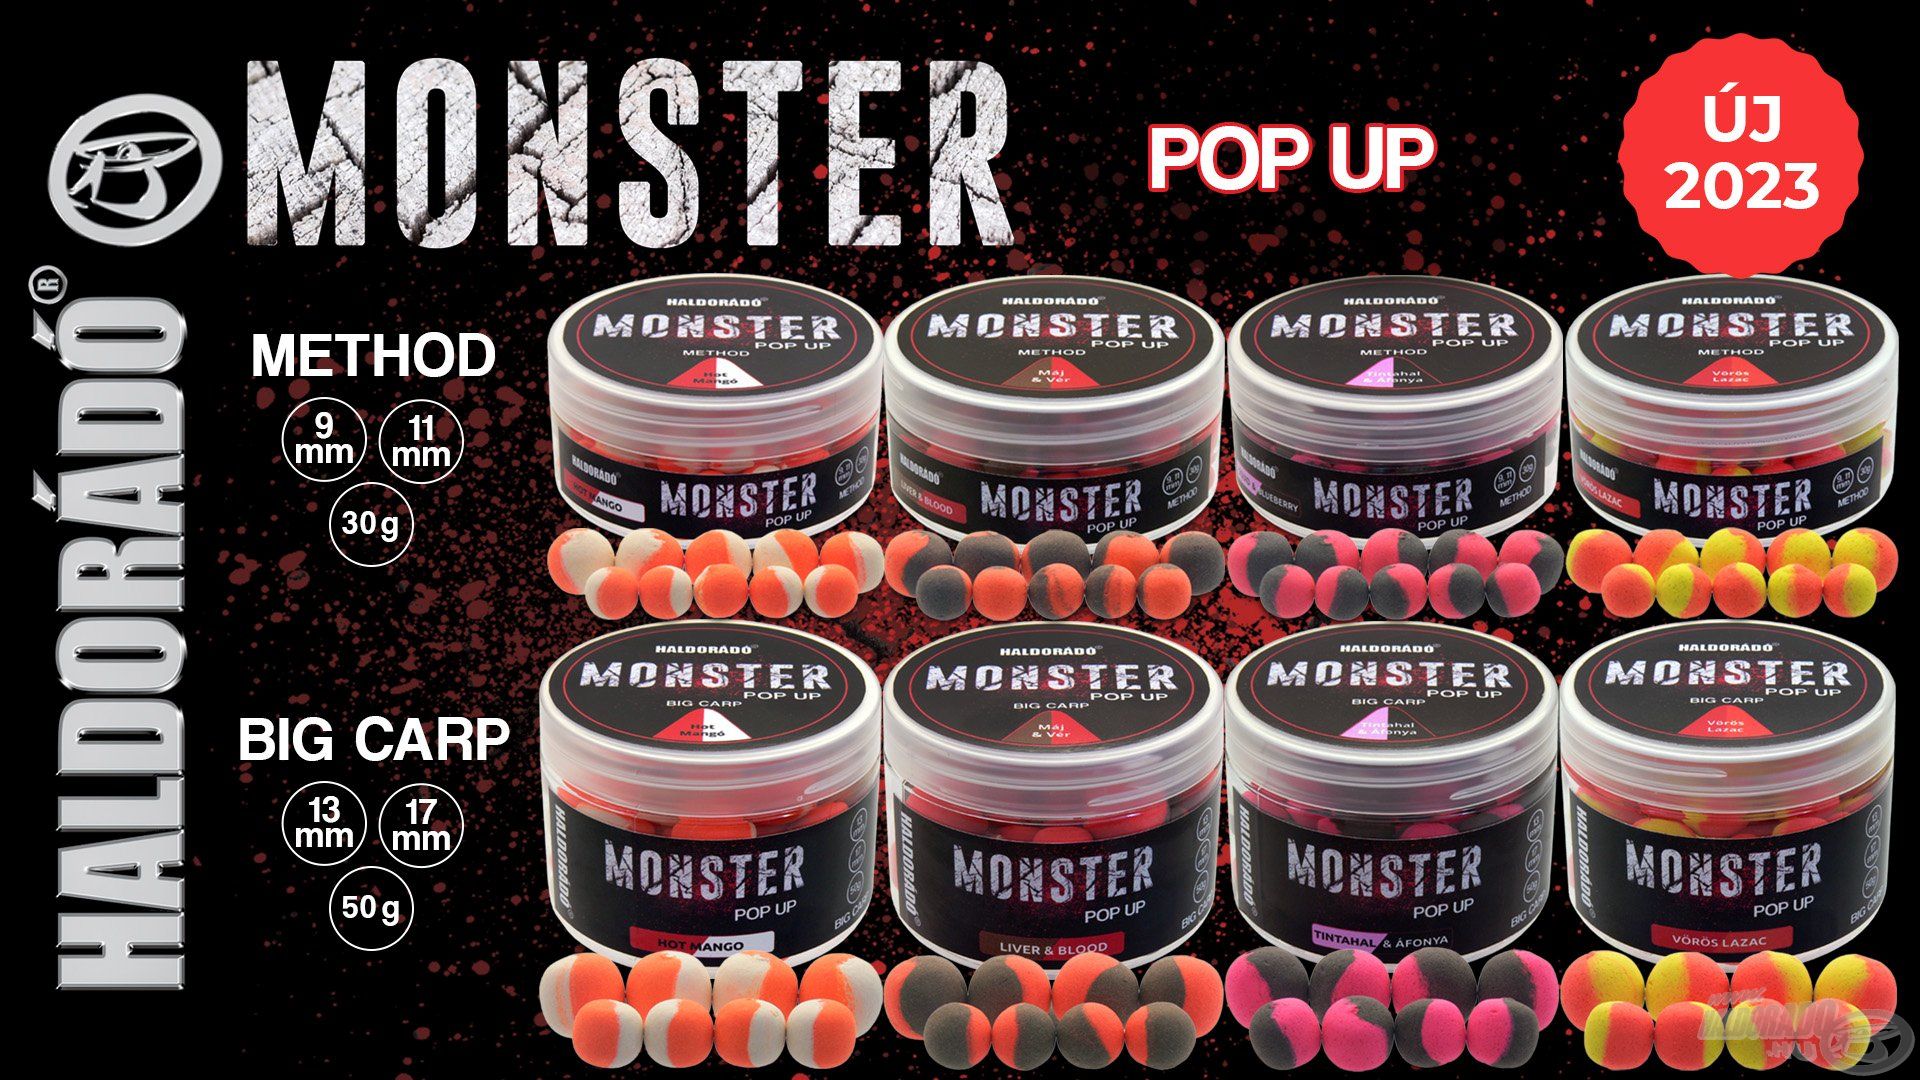 Íme, a MONSTER Pop Up termékcsalád!